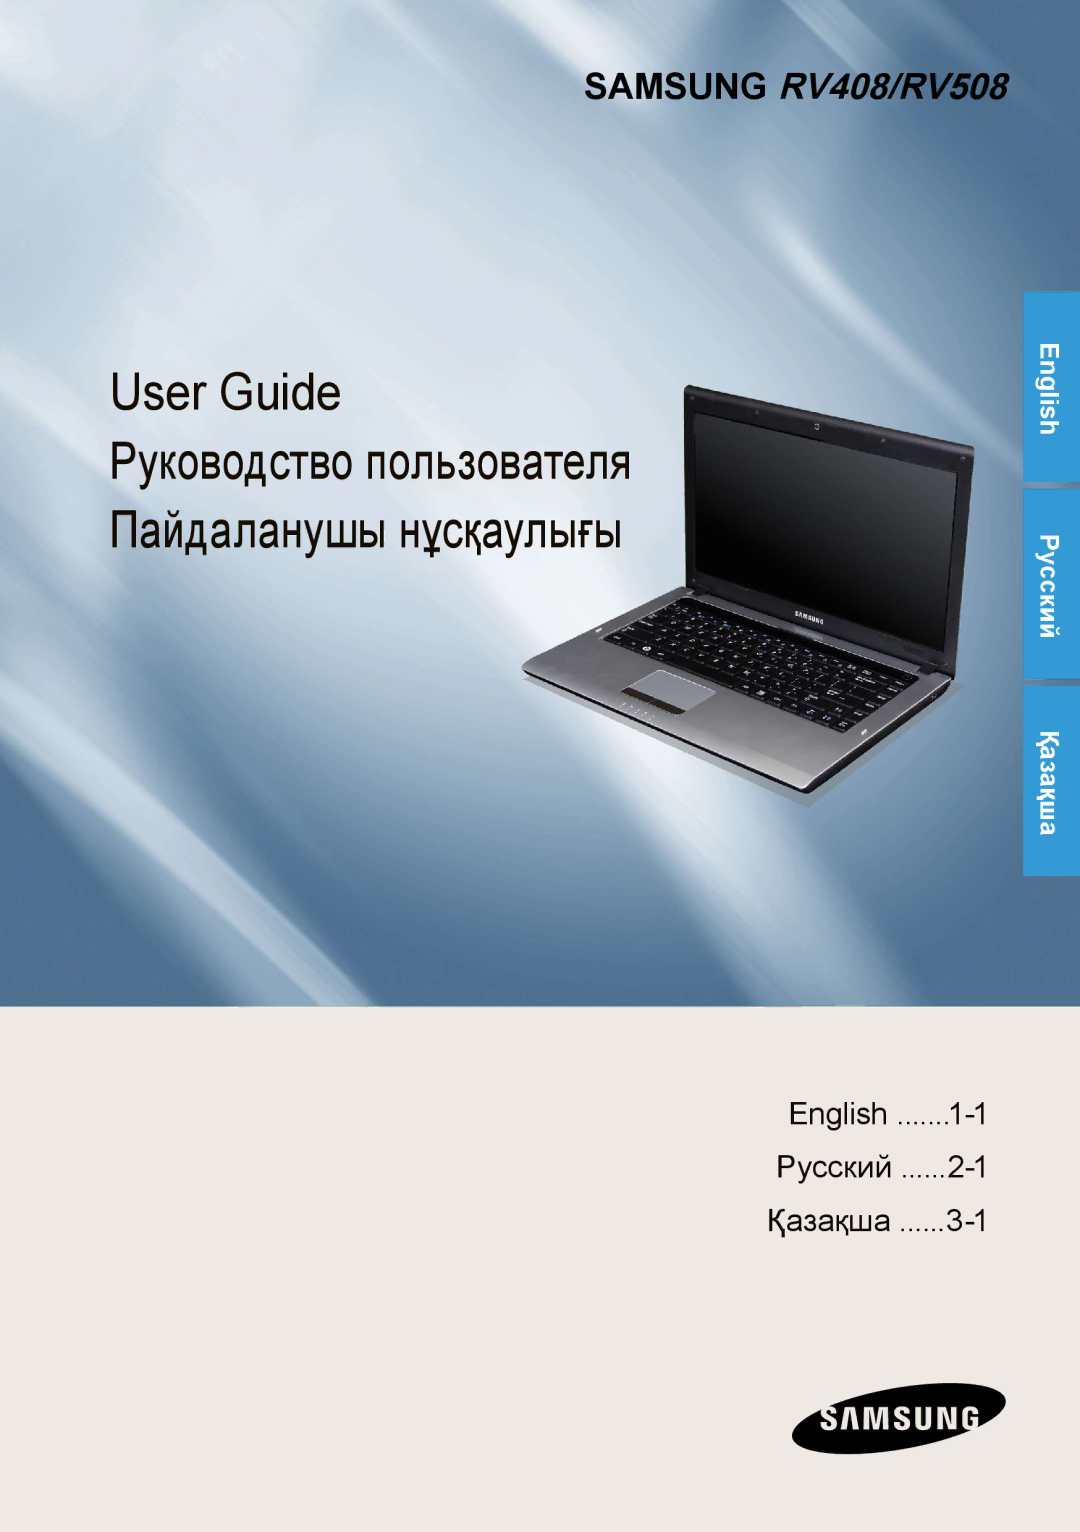 Samsung NP-RV508-A01RU, NP-RV508-A01EE, NP-RV408-A01RU, NP-RV508-A02RU, NP-RV508-S01RU manual User Guide 